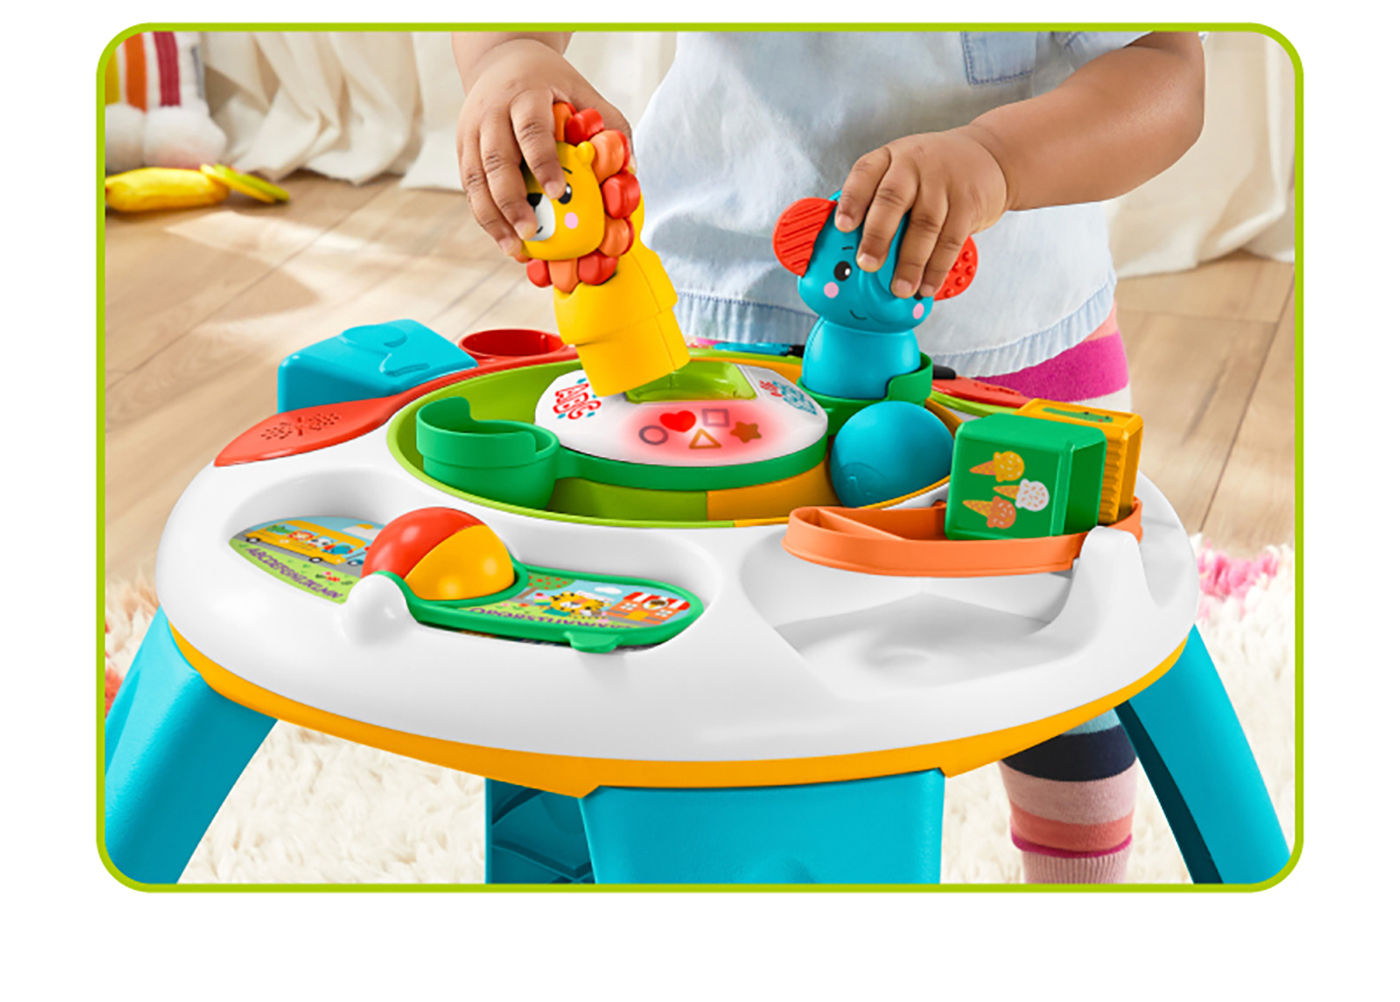 費雪 動物學習遊戲桌六個移動玩具獅子大象方塊和圓球可以自由變換位子啟動遊戲機關